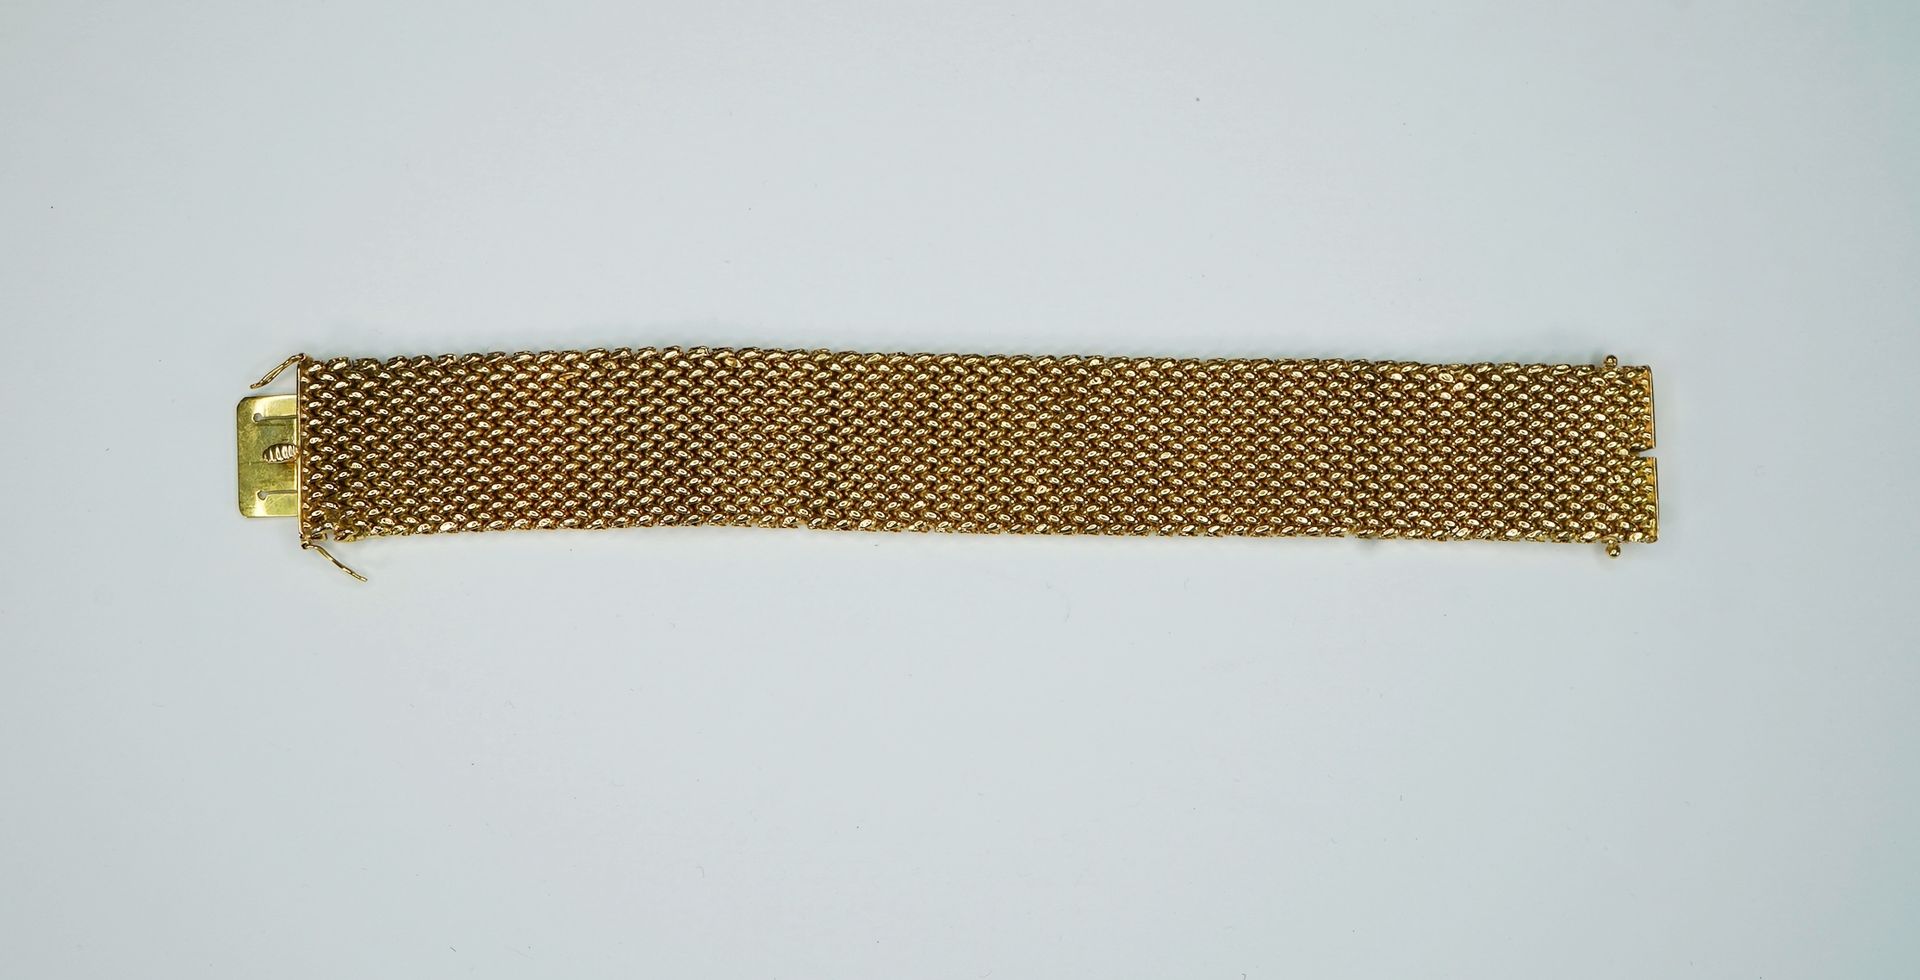 Prächtiges Armband 18K黄金，印有意大利珠宝商的标志。精心编织的手镯，带有安全扣。最小变形，其他状况良好。长约20.5厘米，重约56克